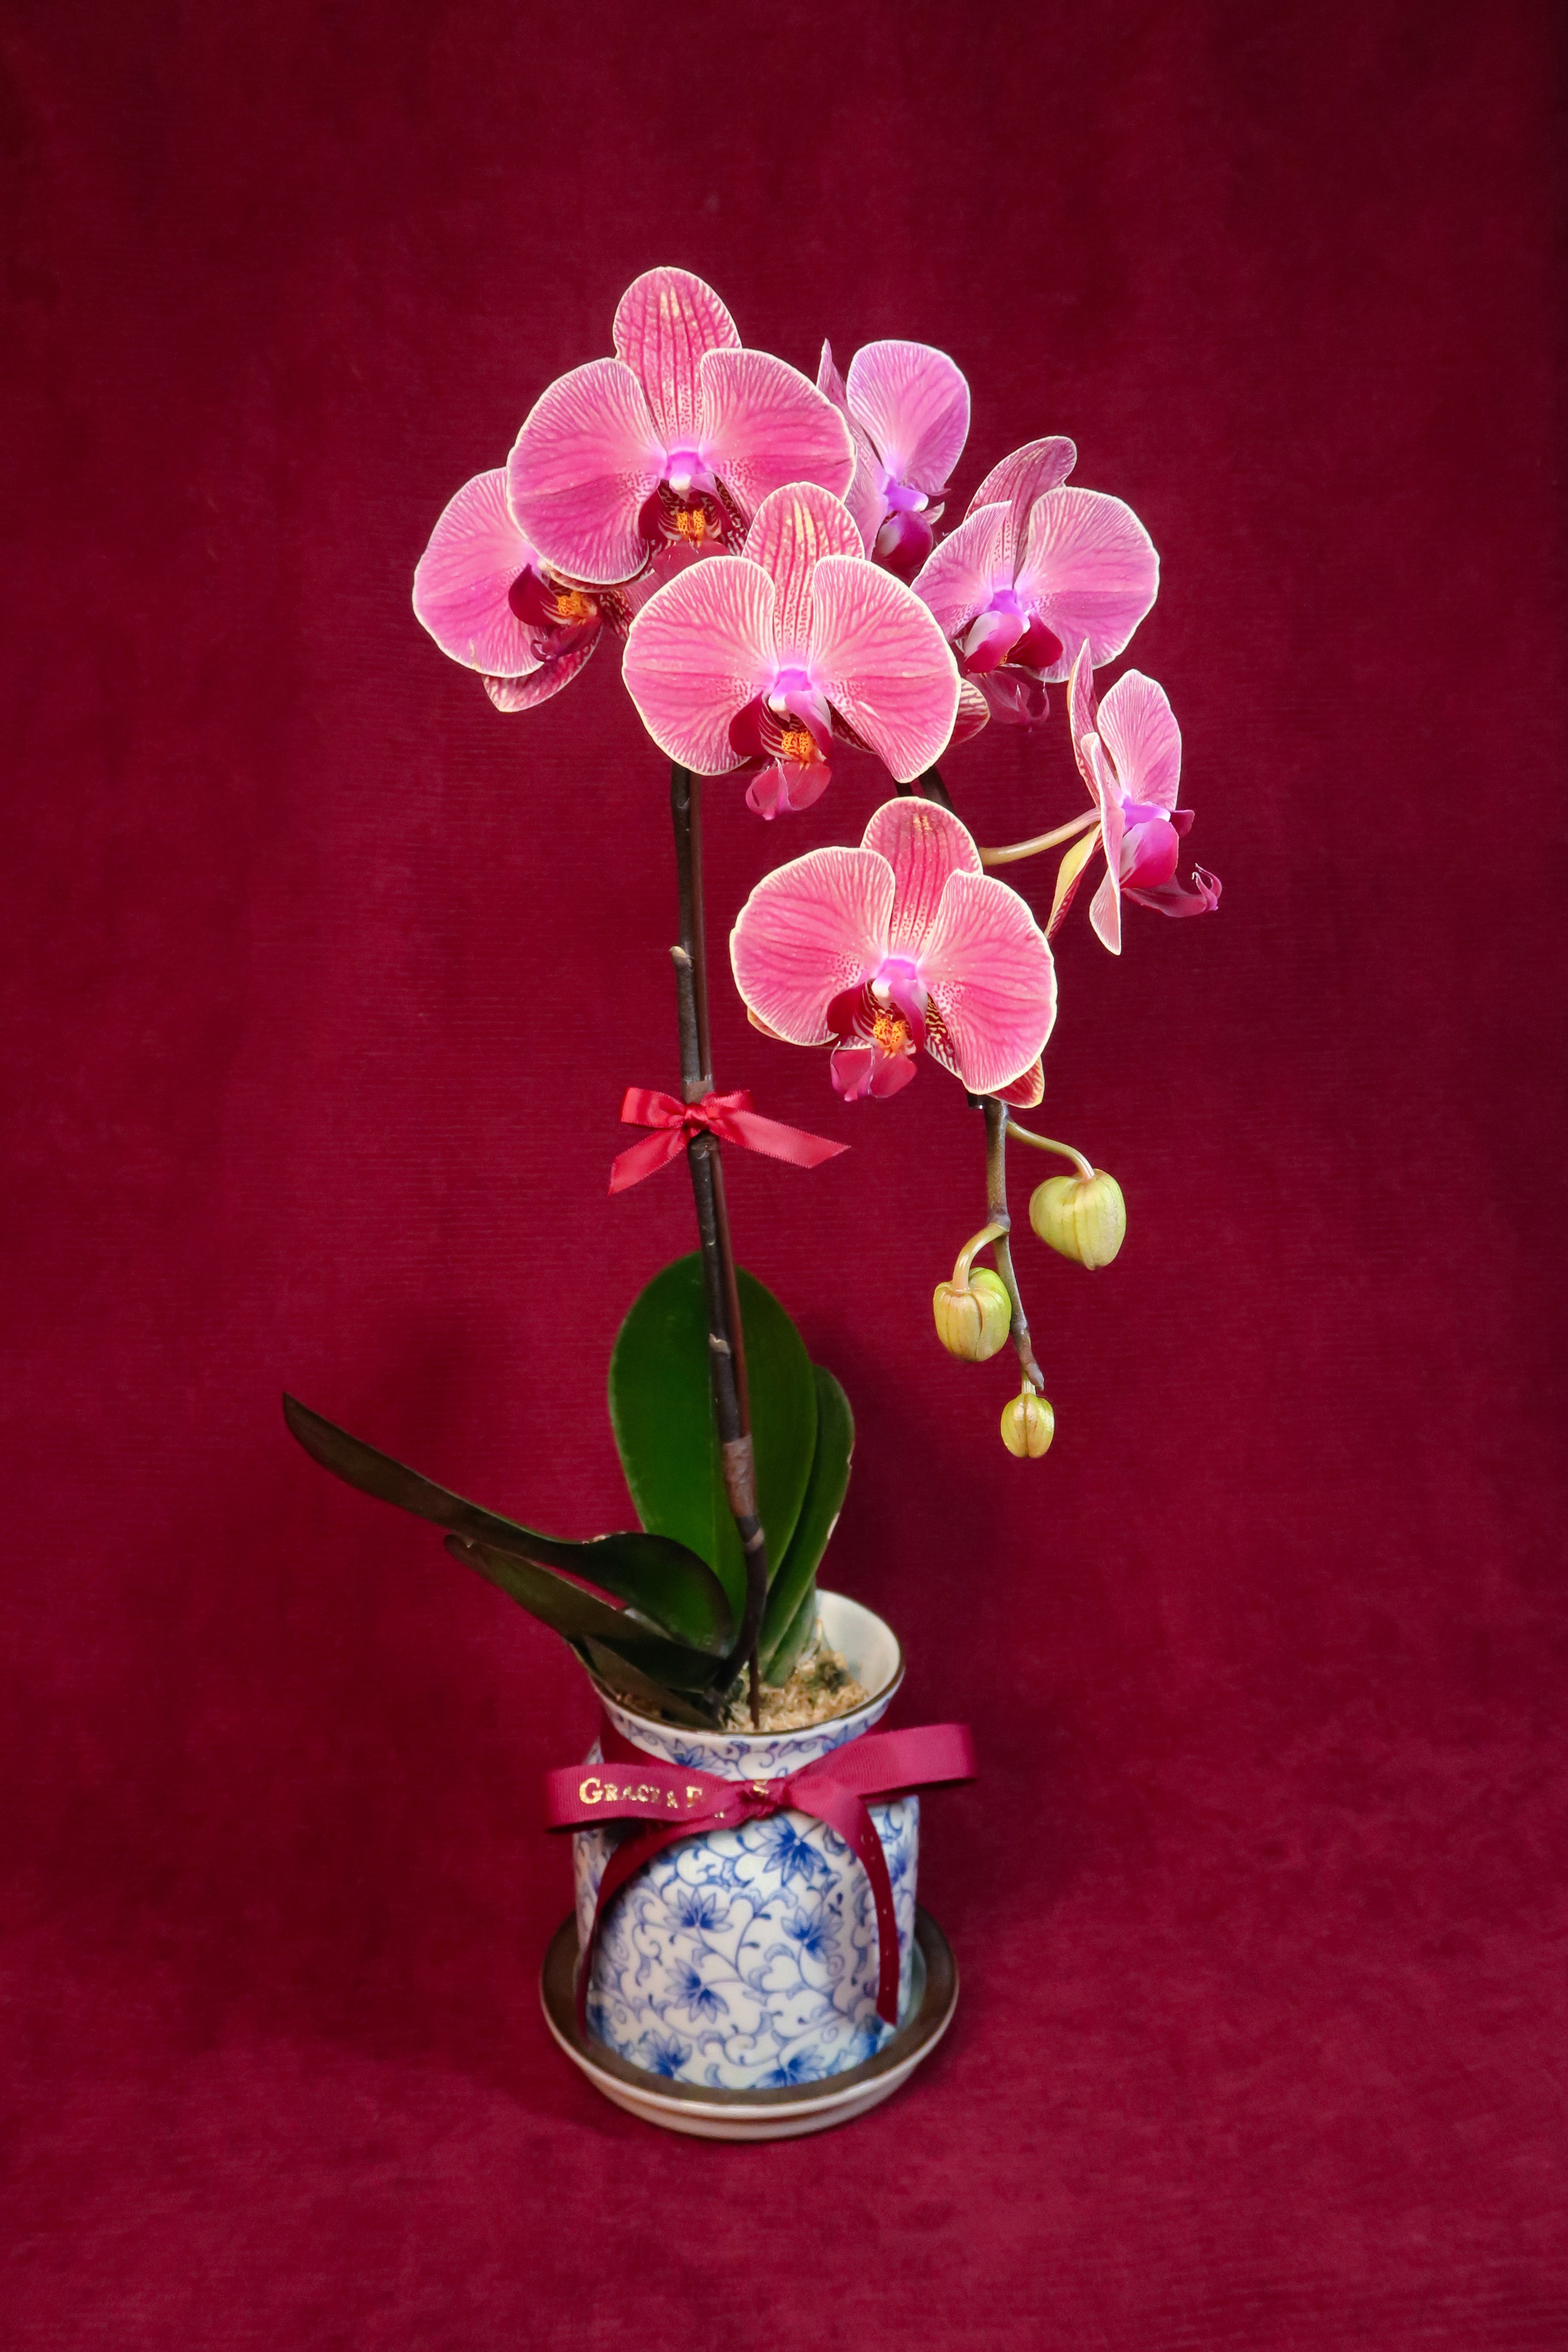 Sunset Phalaenopsis Orchids - Single